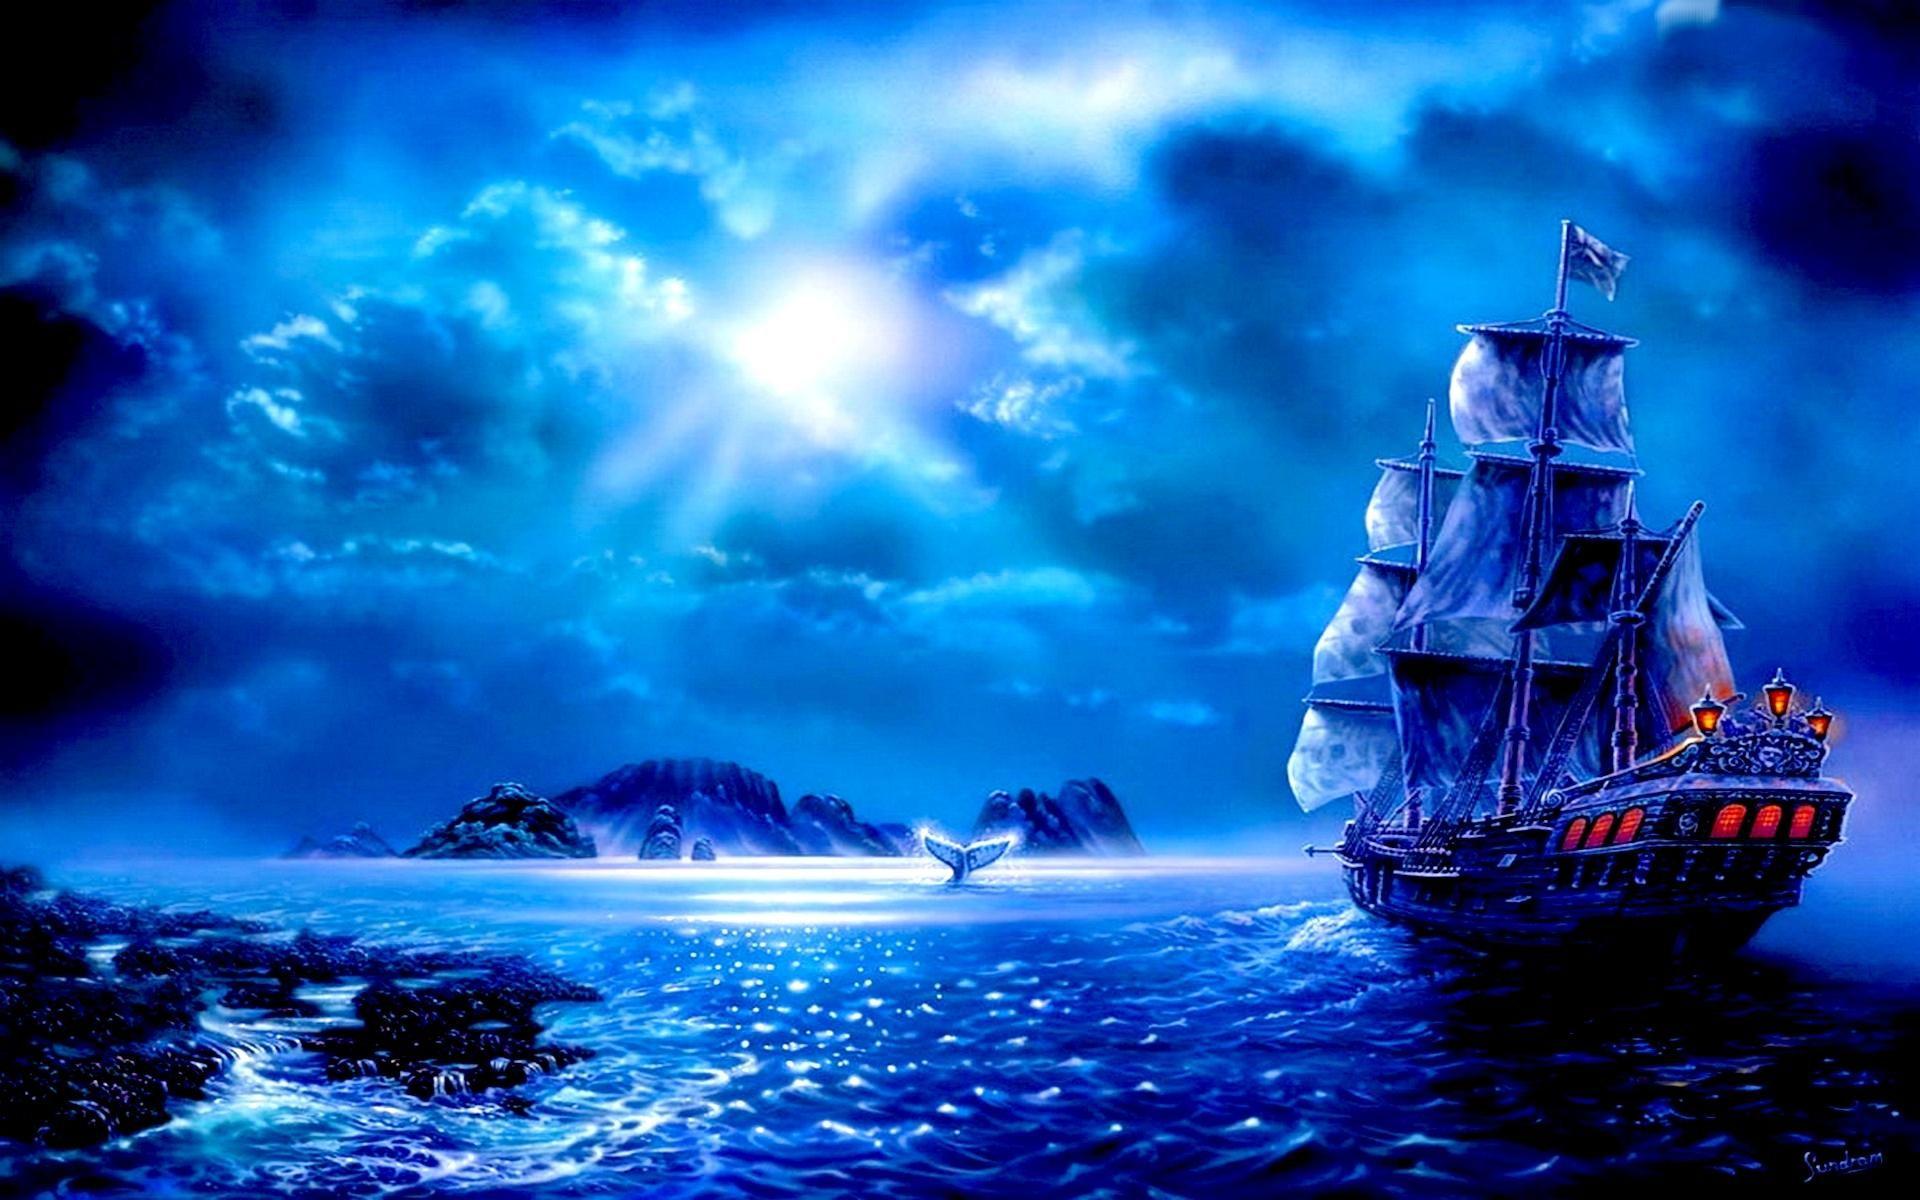 Moonlight Sail. Ship, Boat, Sailboat